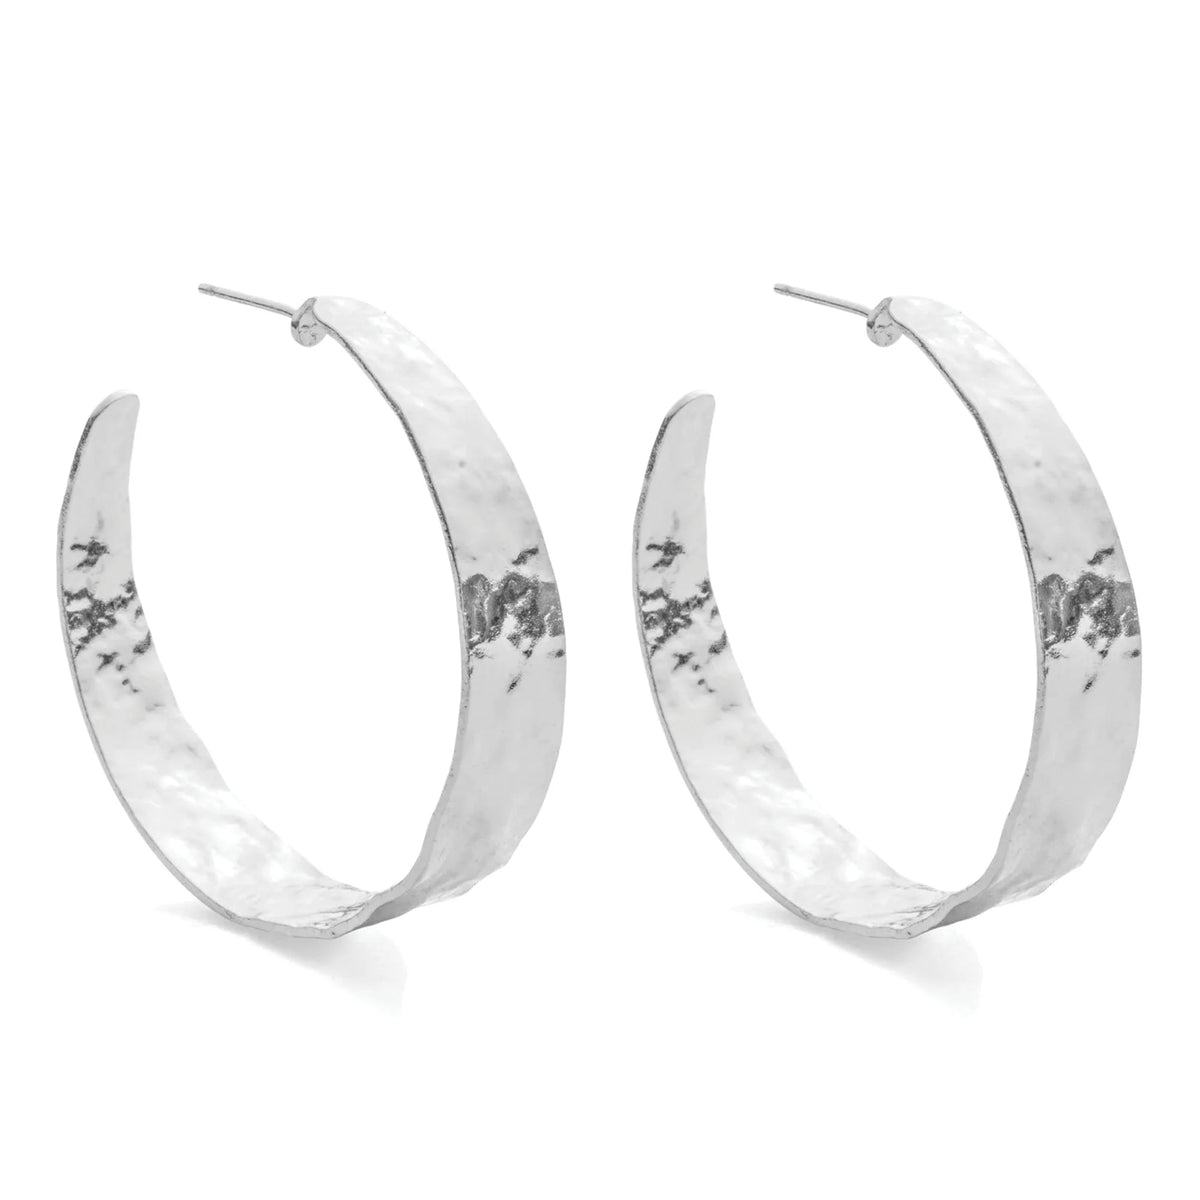 Wide Gilded Hoop Earrings in Silver